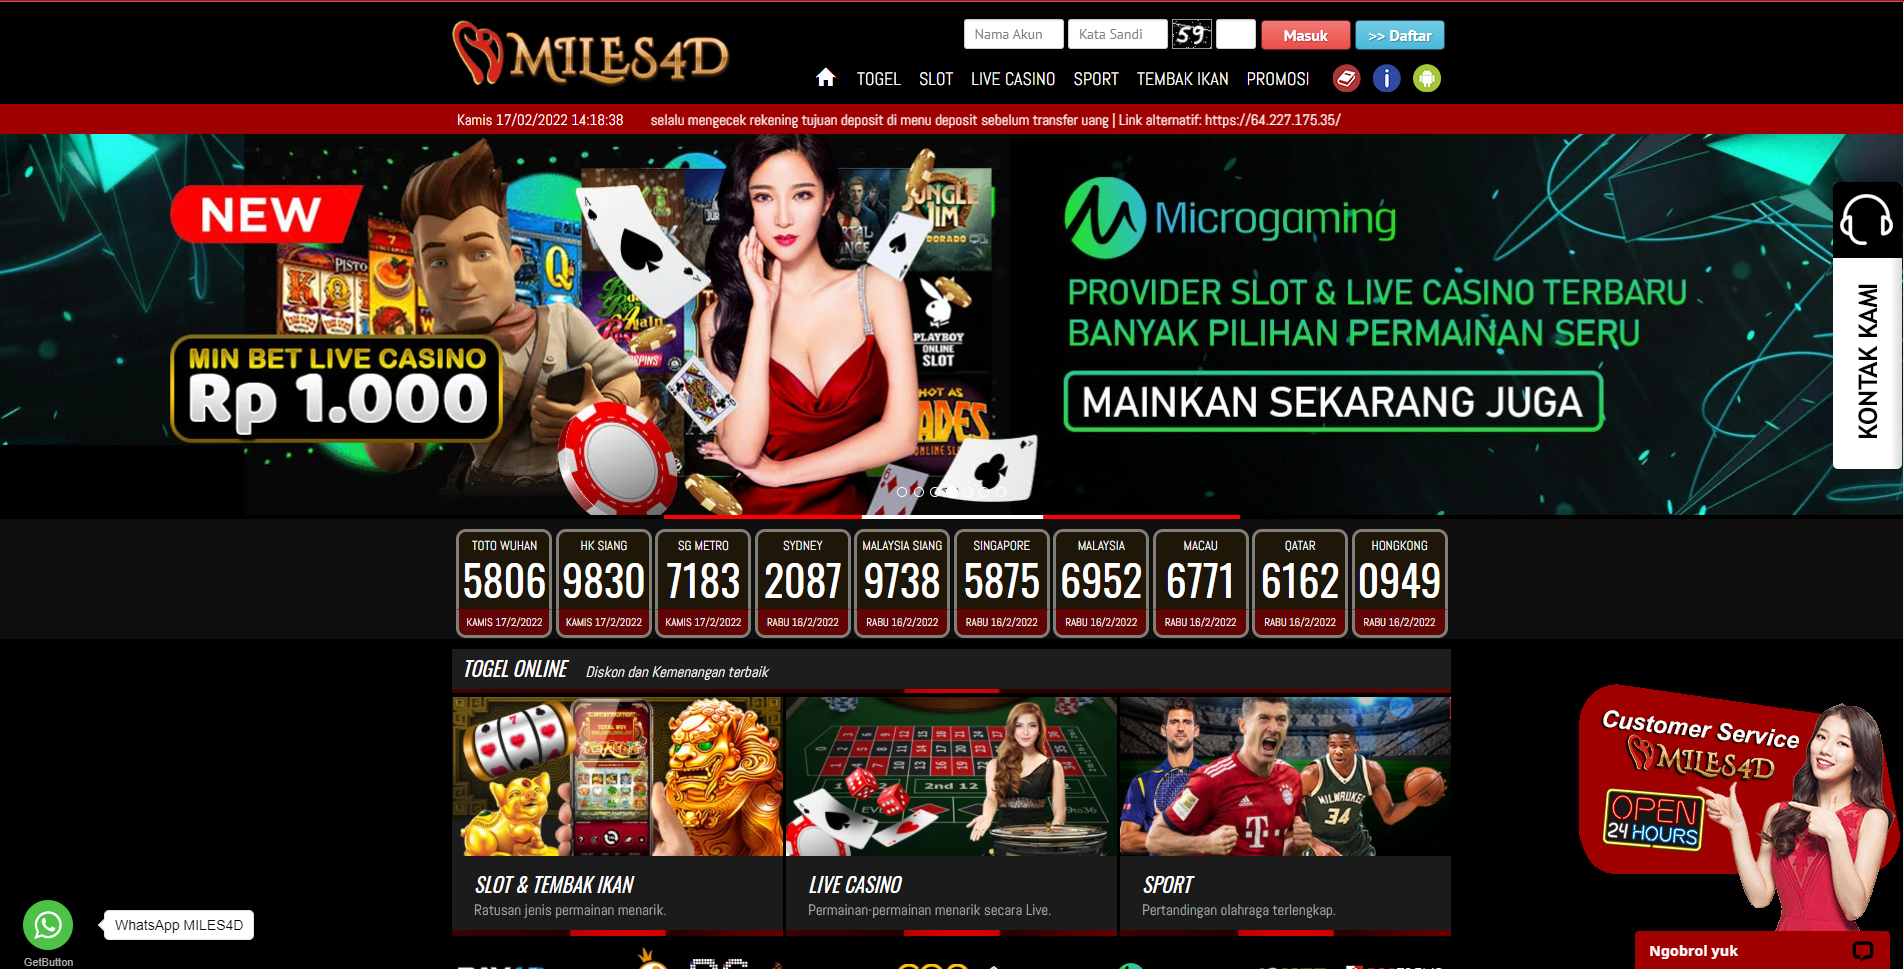 MILES4D Website Game Slot Terlengkap di Indonesia